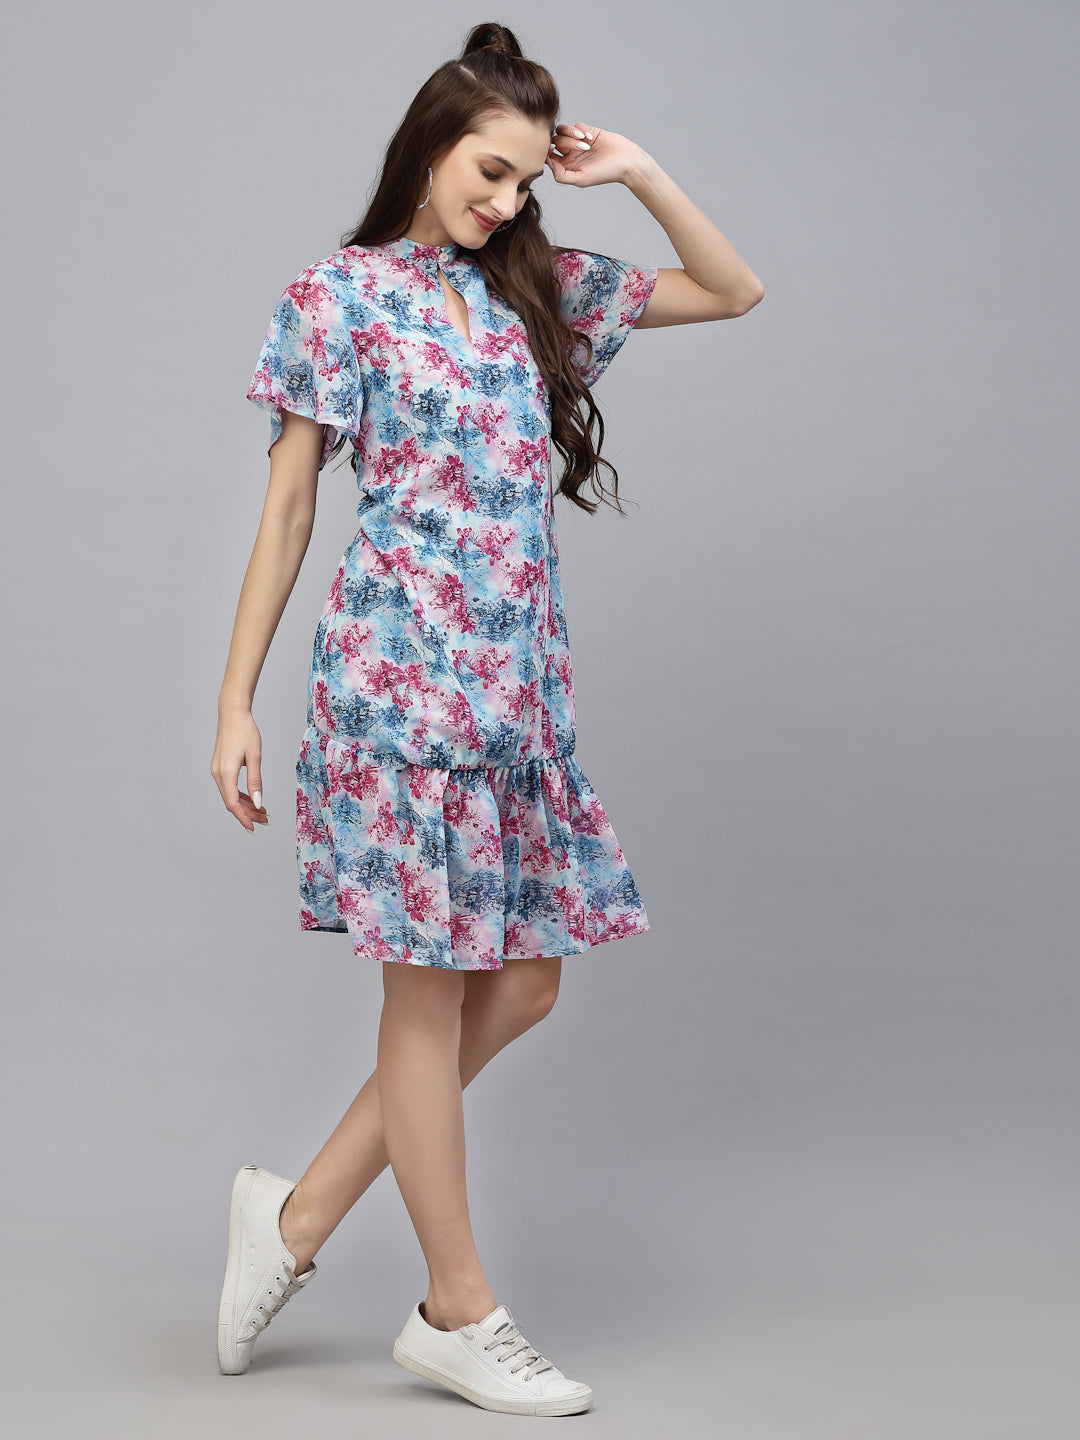 Valbone Western Wear Women's Blue & Pink Georgette Floral Printed Dress